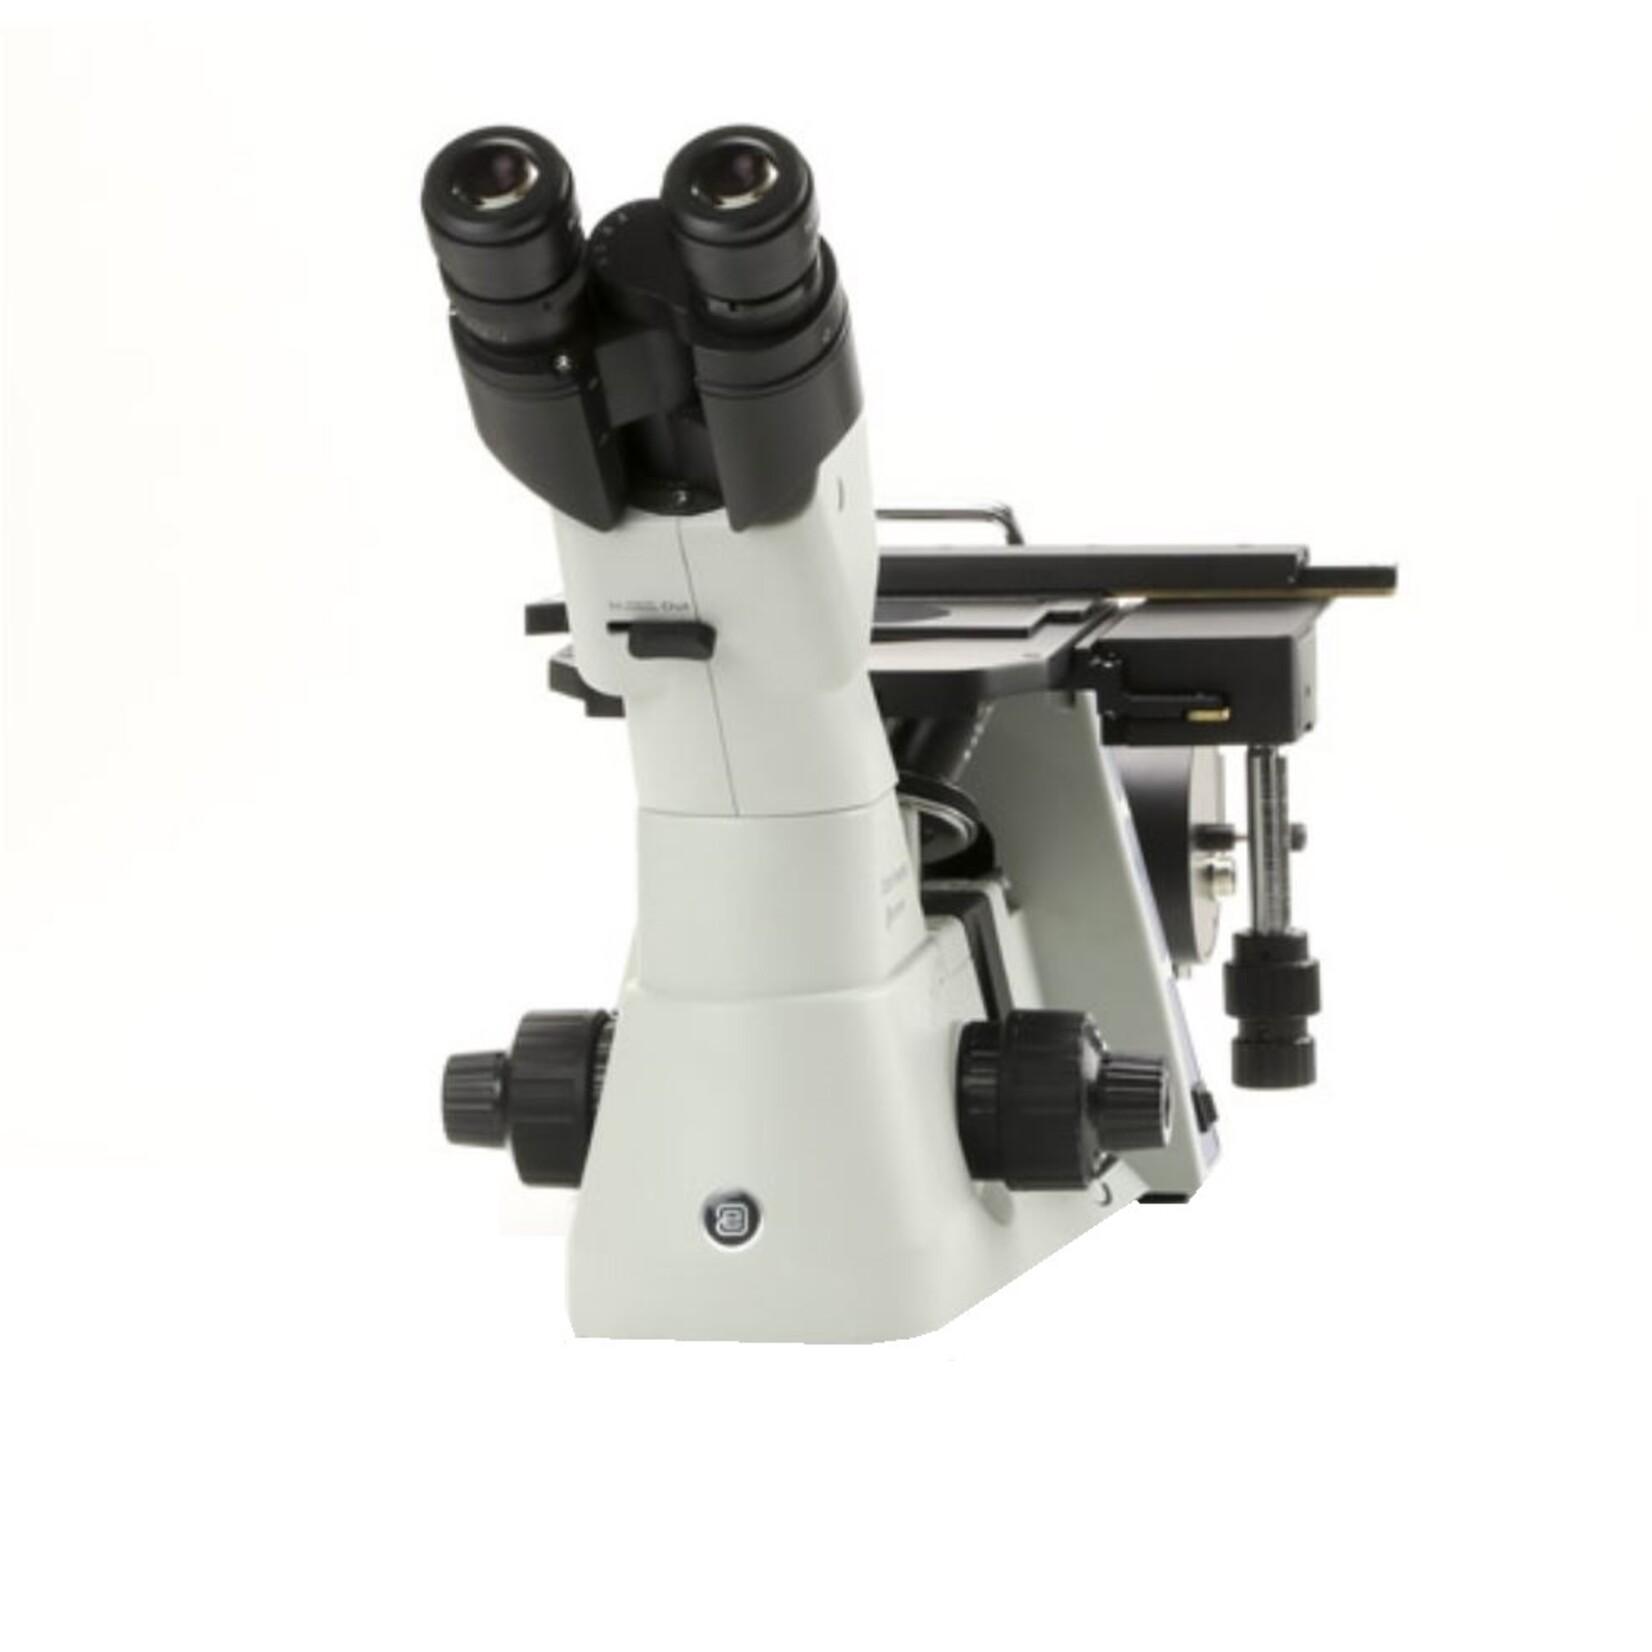 Inverso  Microscópio metalúrgico Oxion Inverso